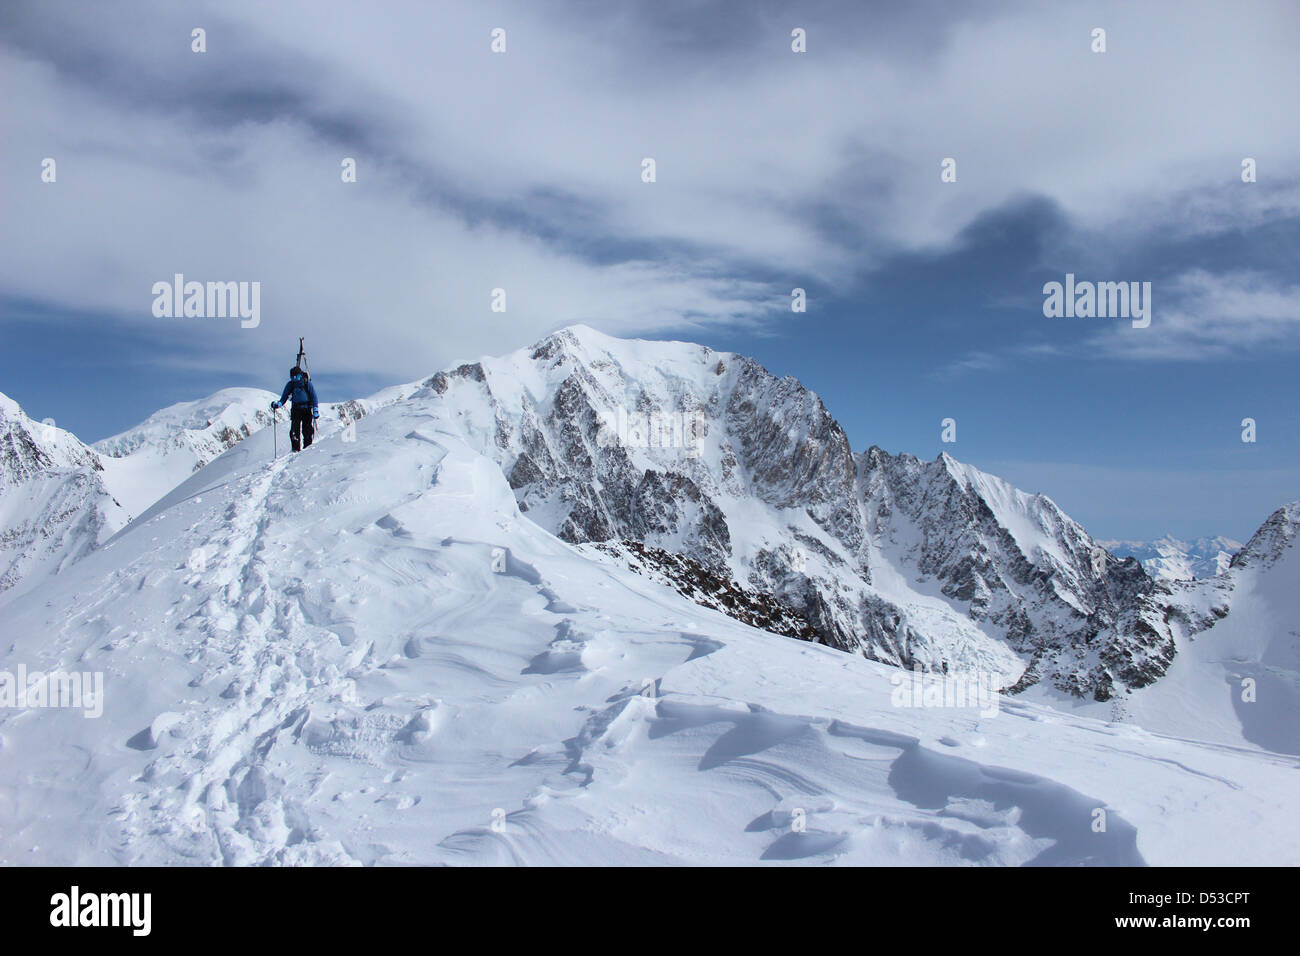 Ski tour ridge of Domes de Miage. Summit of Mont Blanc in background. Stock Photo